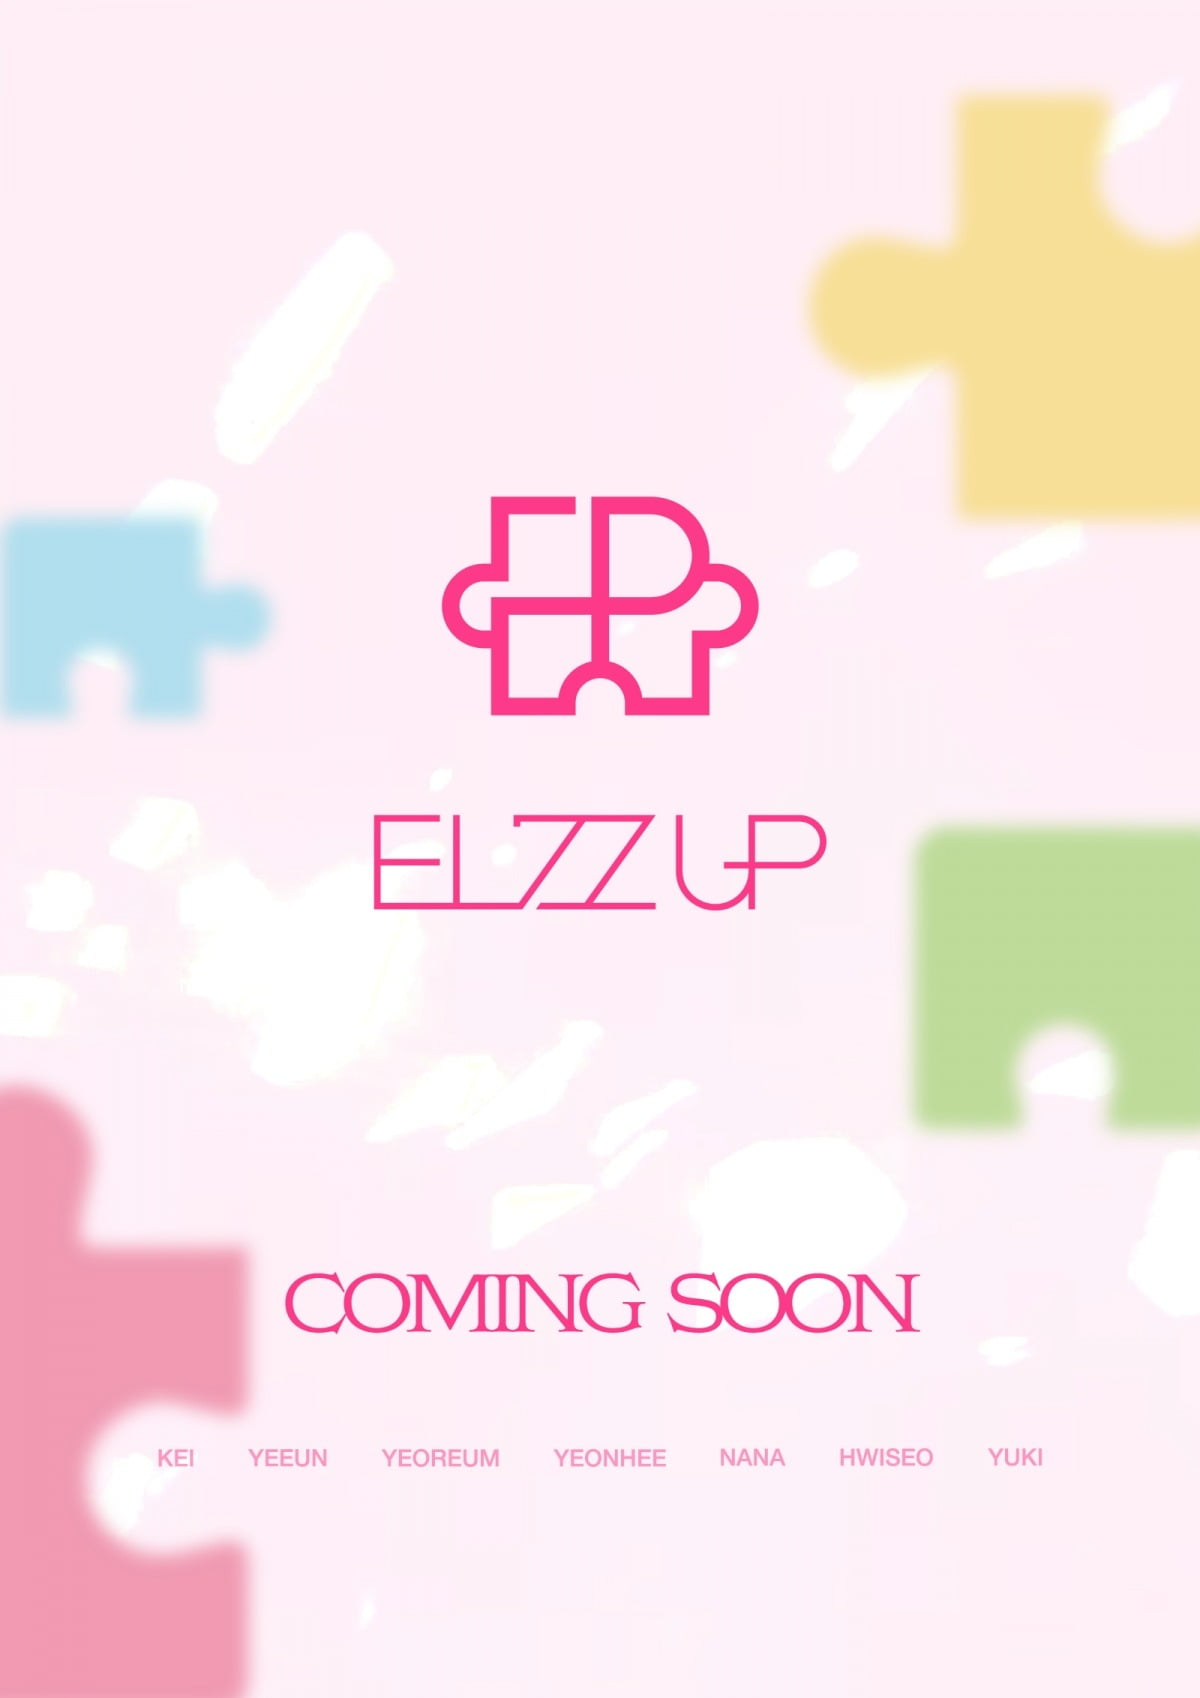 EL7Z will debut in September